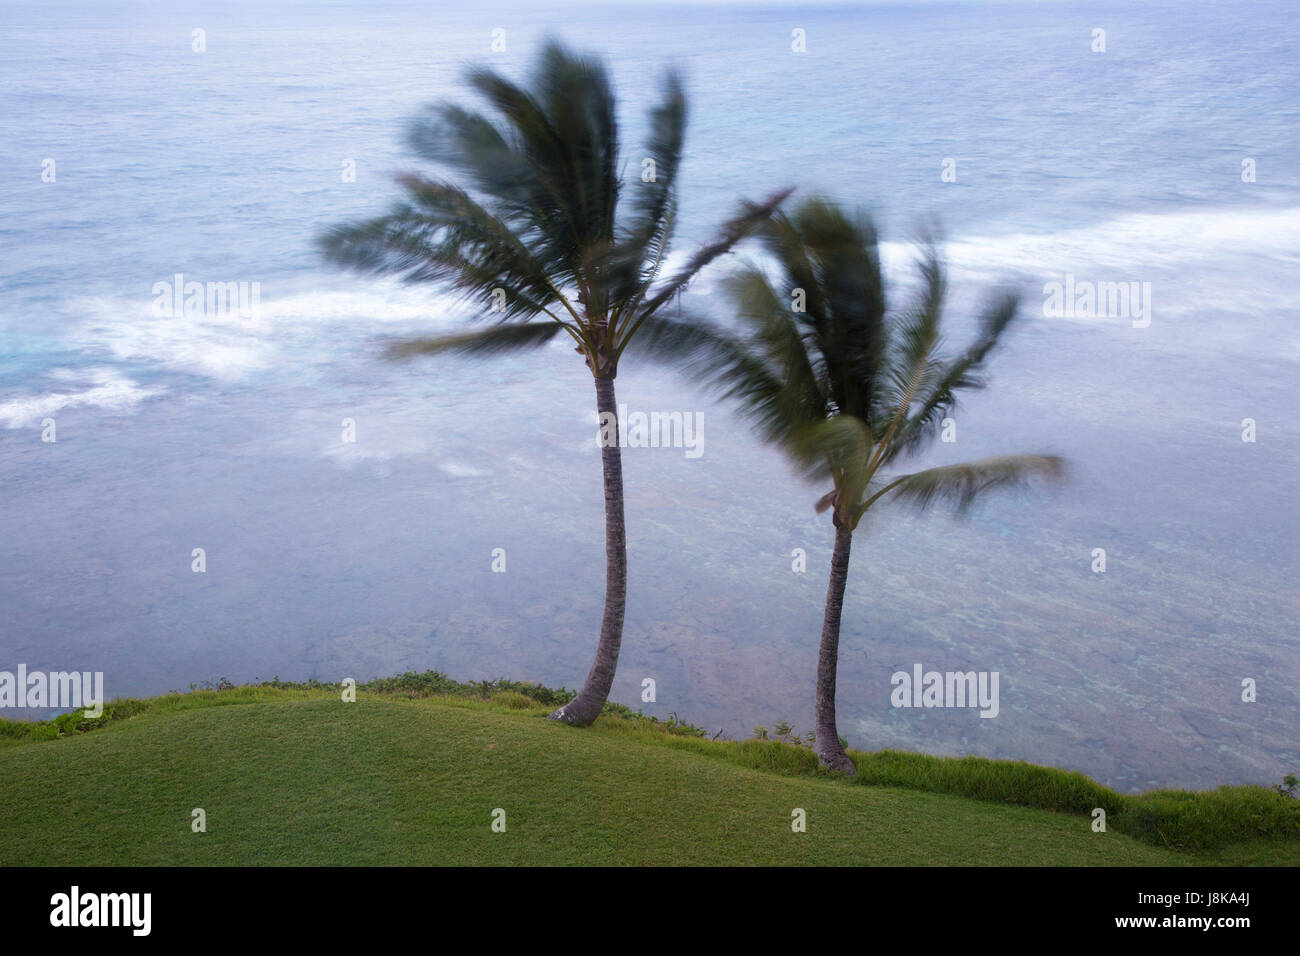 Palmen, die bei einem Sturm an der Pazifikküste Hawaiis in starkem Wind wehen Stockfoto